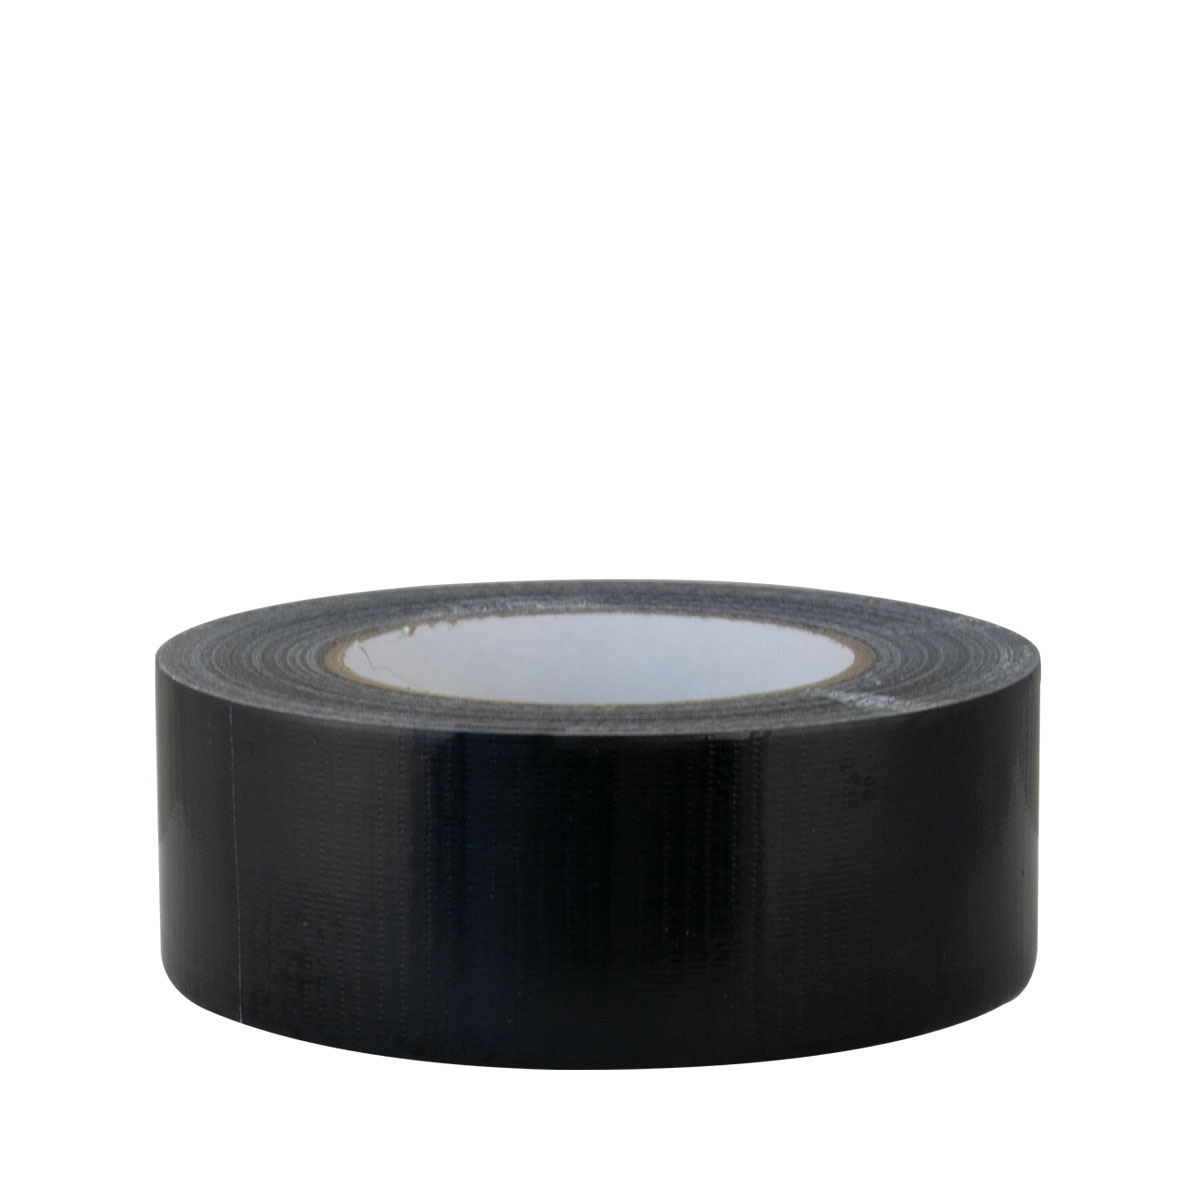 Farbklecks24 Gewebeband 48mm x 50m,schwarz Duct Tape, Reparaturband bis 40°C